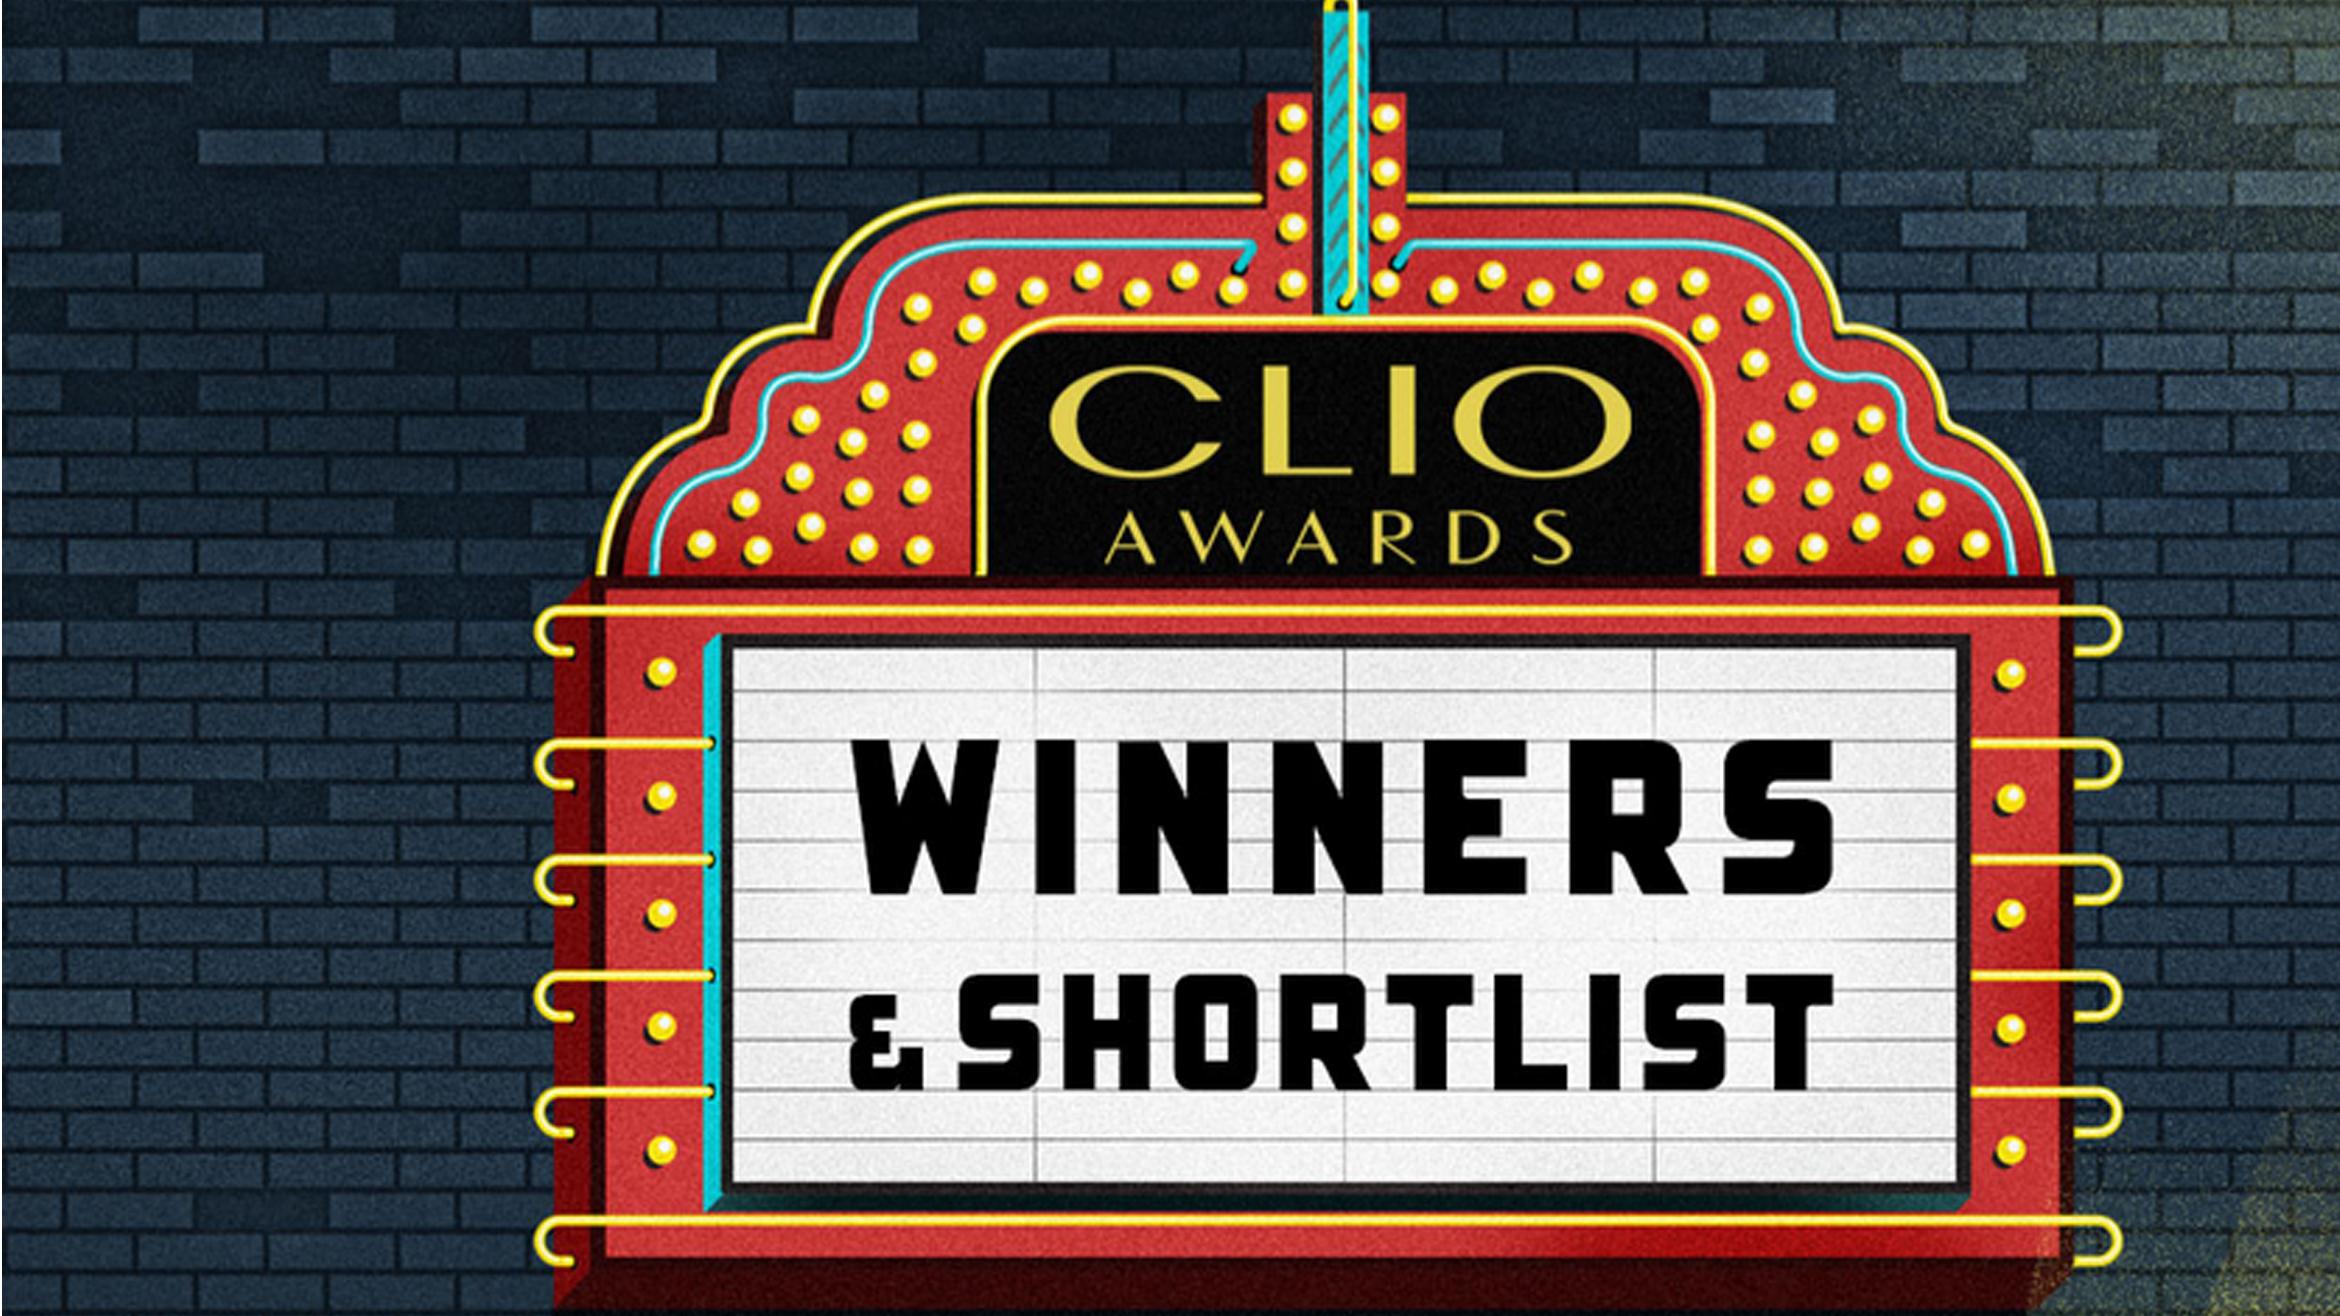 Die Clio-Awards waren aus deutscher Sicht auch 2022 kein erfolgreicher Wettbewerb –